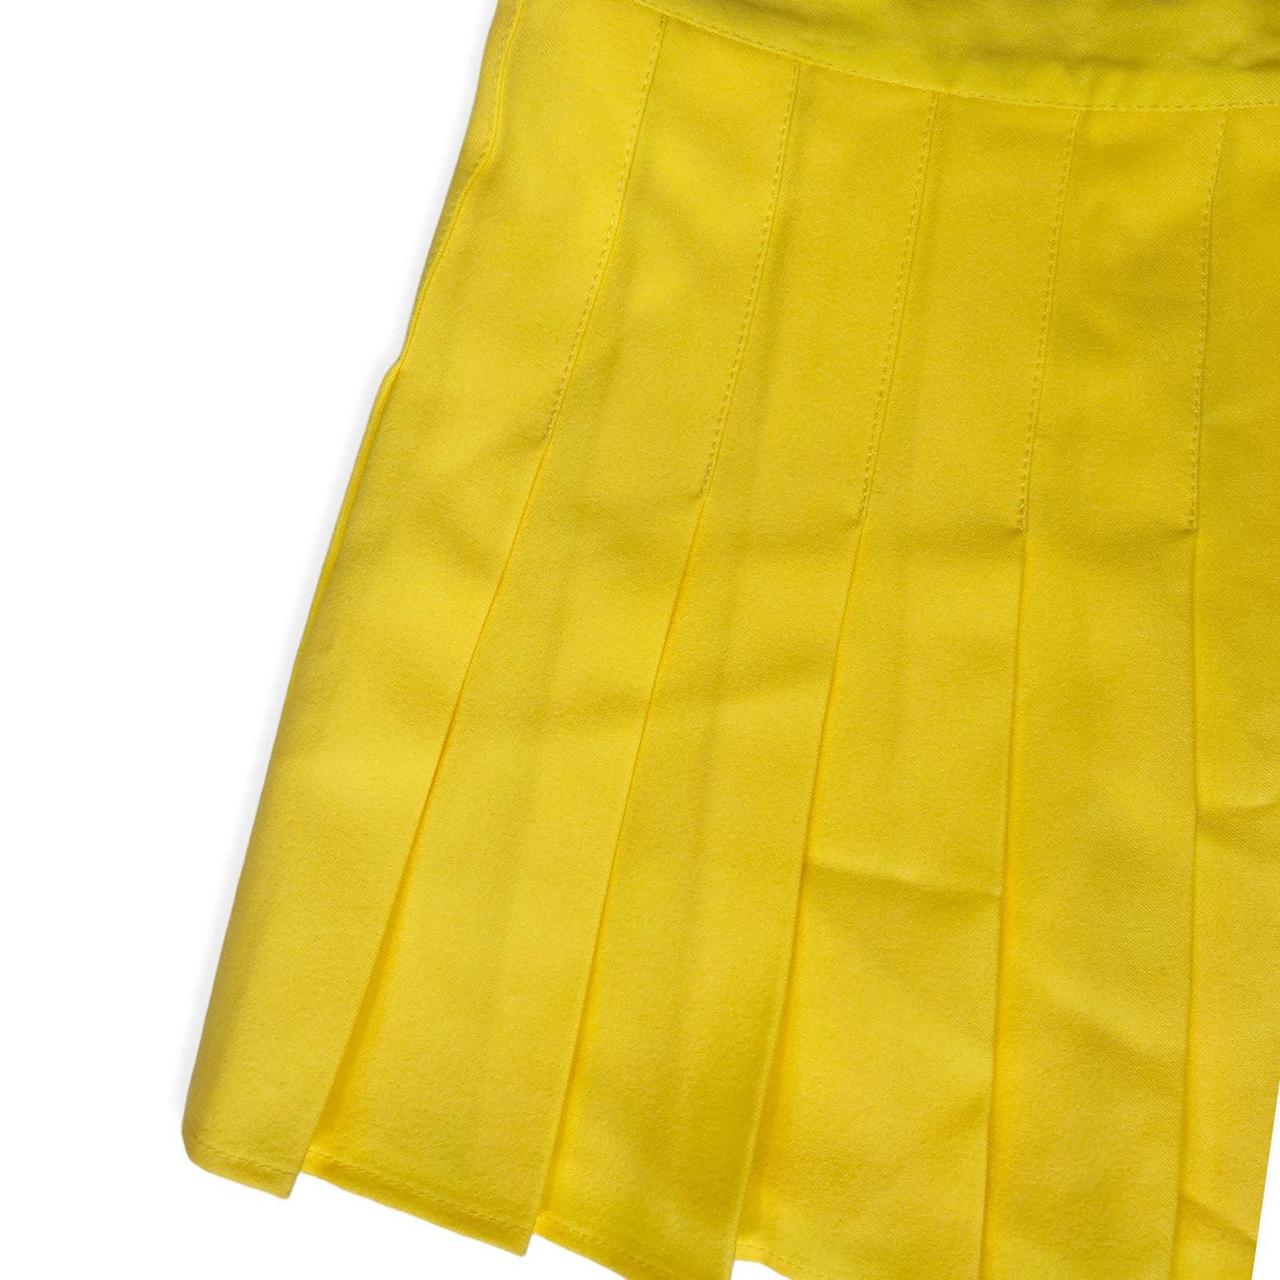 Product Image 2 - Y2K Pleated Tennis Skirt 🍒

Y2K